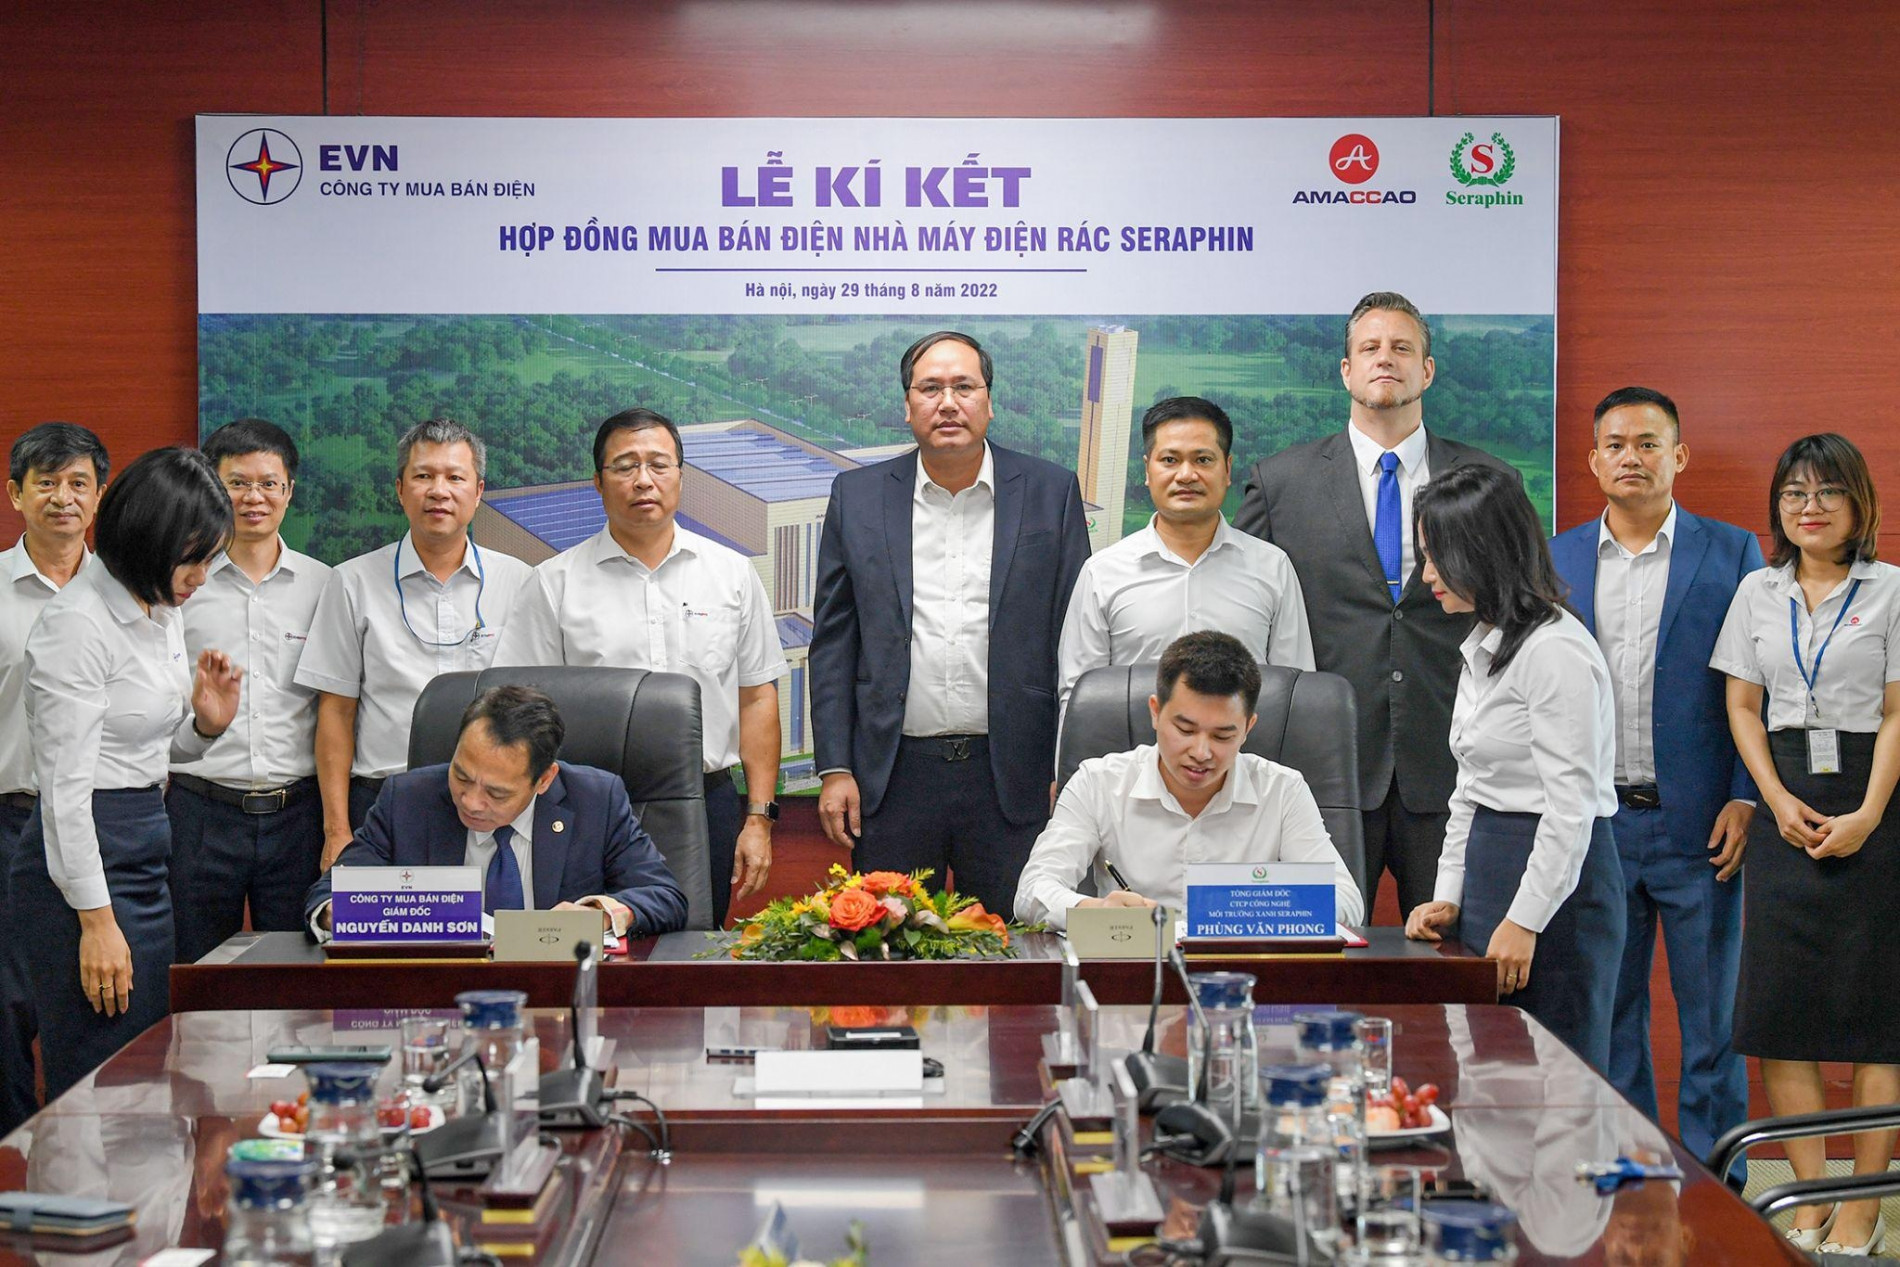 Nhà máy điện rác Seraphin ký hợp đồng mua bán điện với EVN - 1